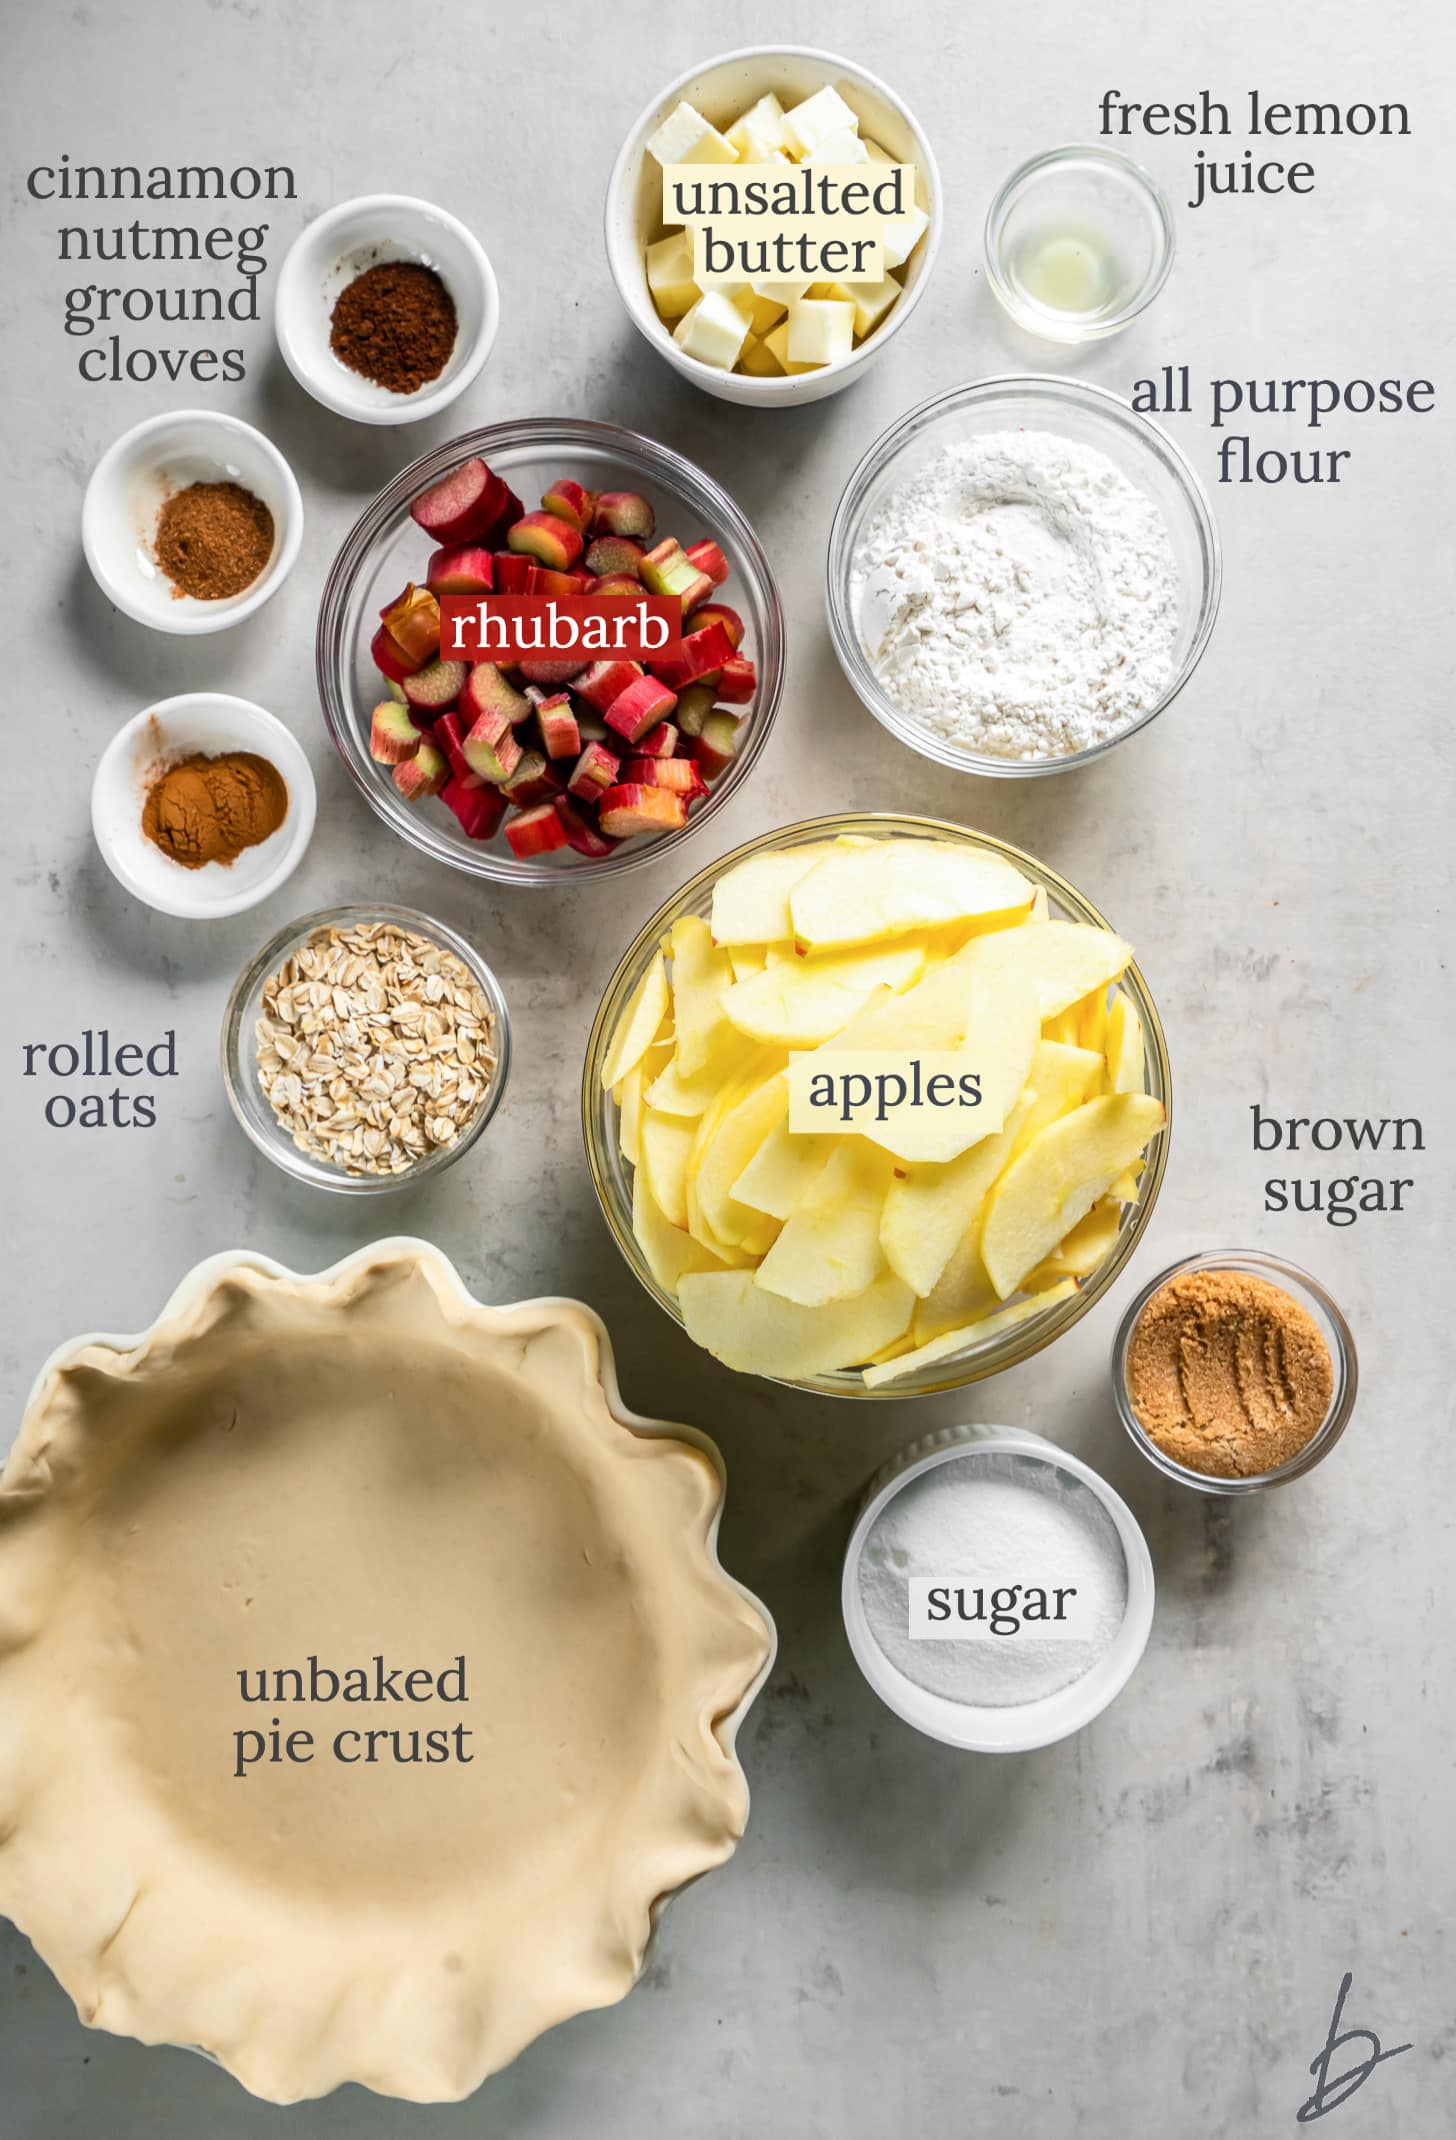 bowls of ingredients to make apple rhubarb pie.